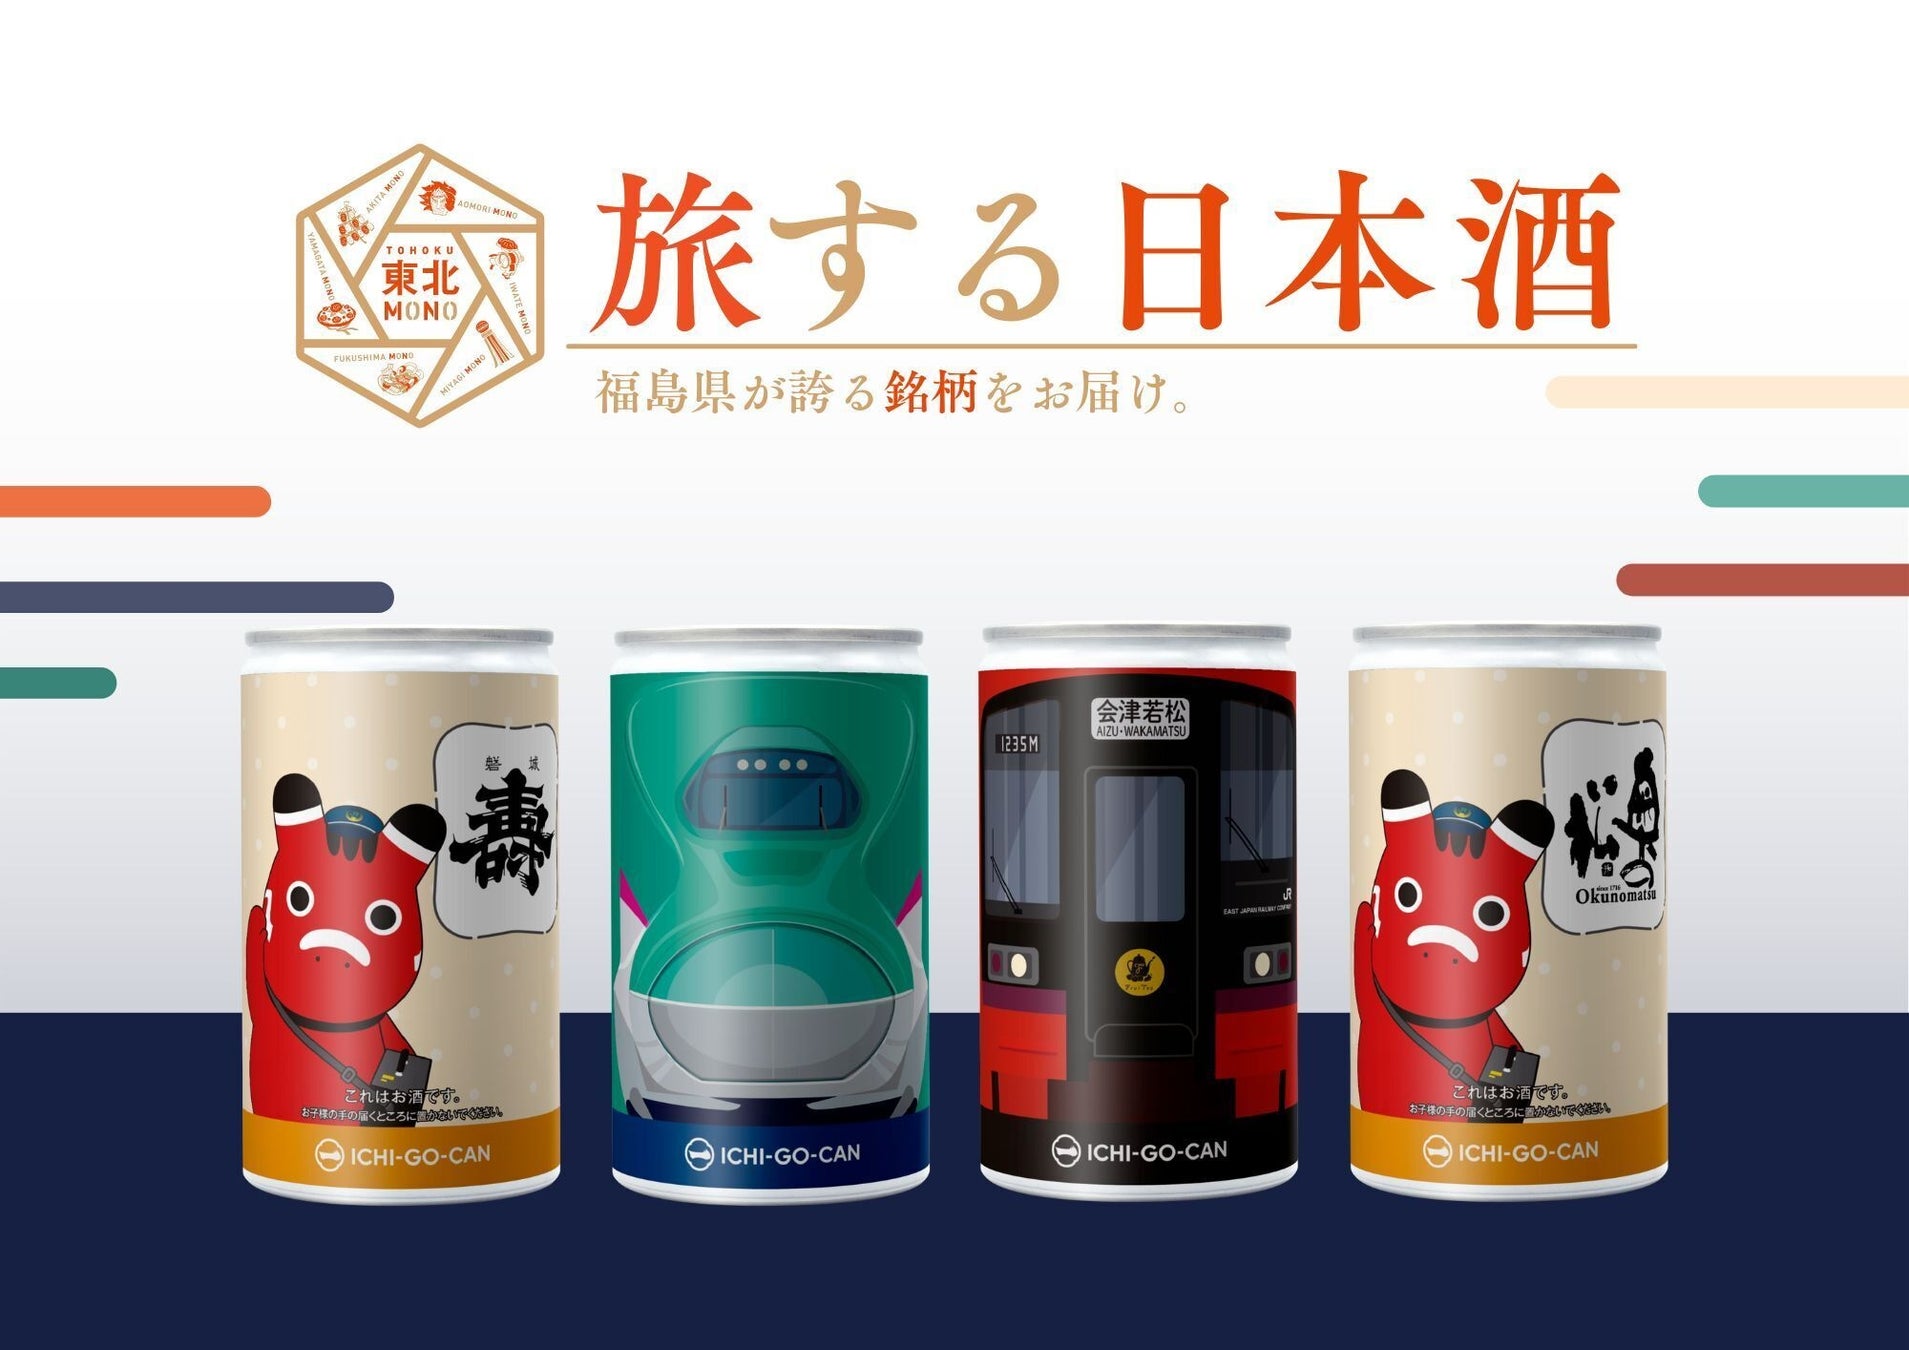 日本酒ブランド「ICHI-GO-CAN®」×JR東日本グループで地域共創！福島秋観光キャンペーンに合わせて「東北新幹線E5系」と「フルーティアふくしま」をデザインした福島の銘酒を限定販売